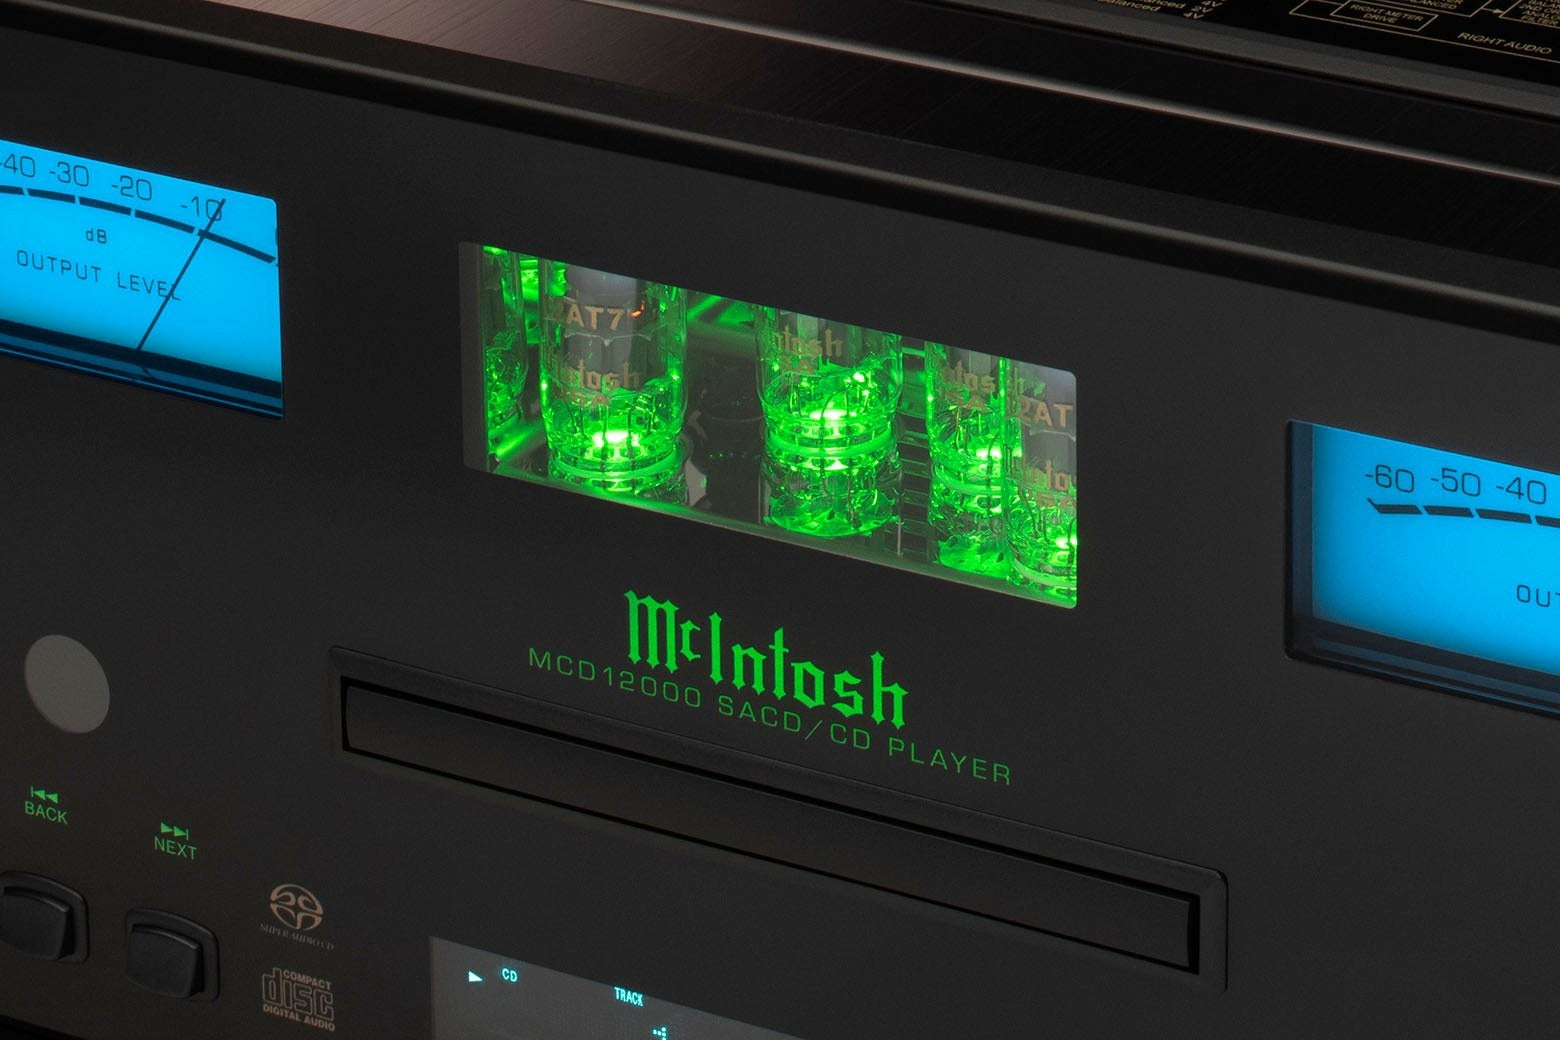 McIntosh MCD12000 - 2-Channel SACD/CD Player